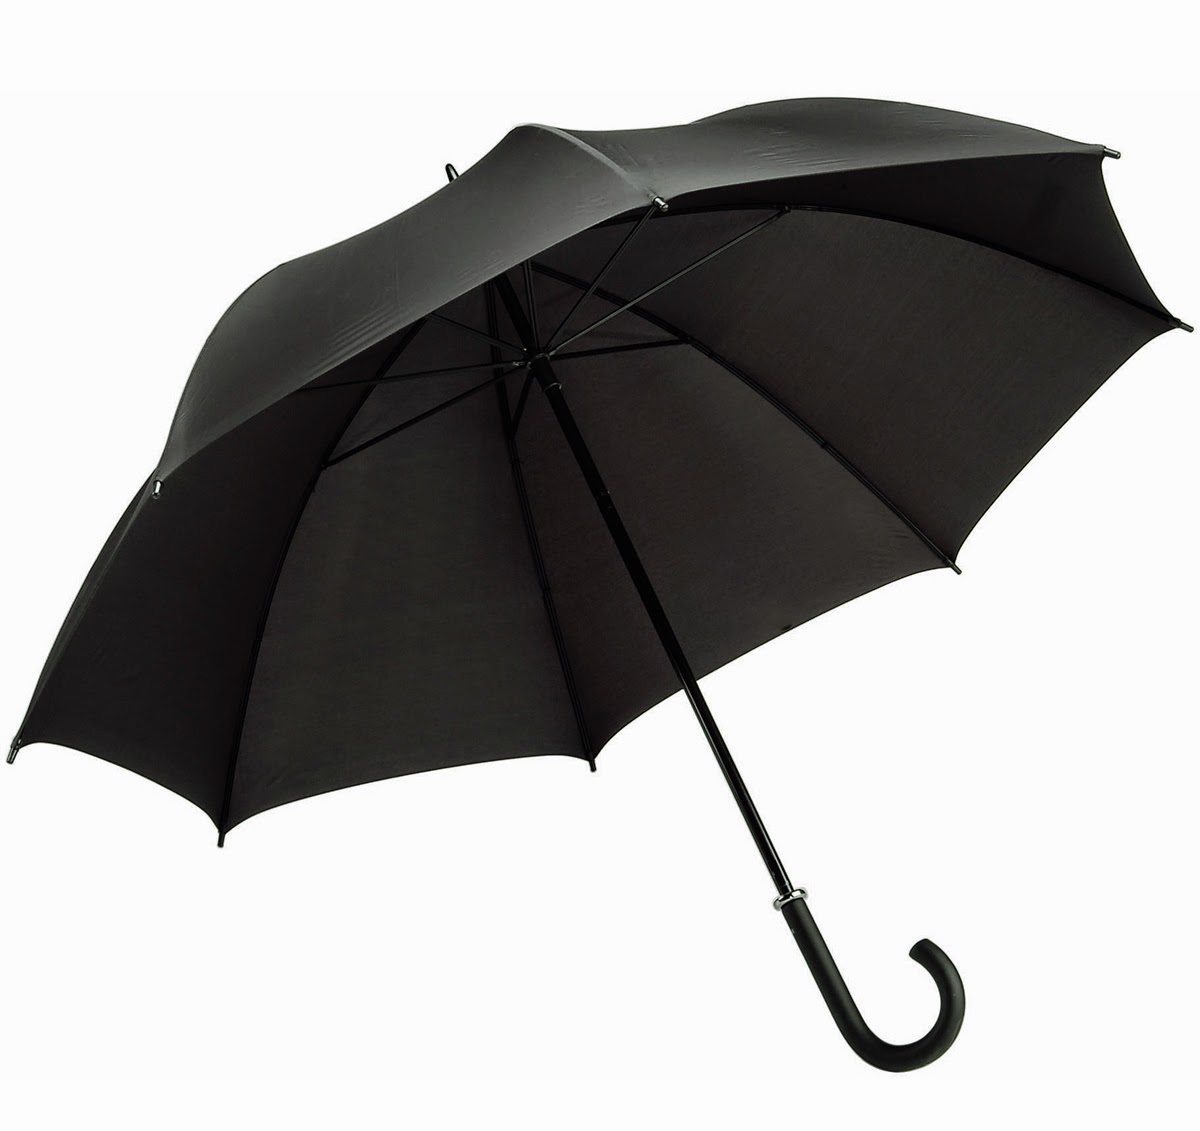 Accesorios Paraguas y accesorios para la lluvia 15 unids sombrillas sombrillas paraguas indio étnico espejo de trabajo sombrilla paraguas bordado paraguas algodón tesol sombrilla hecha a mano paraguas 